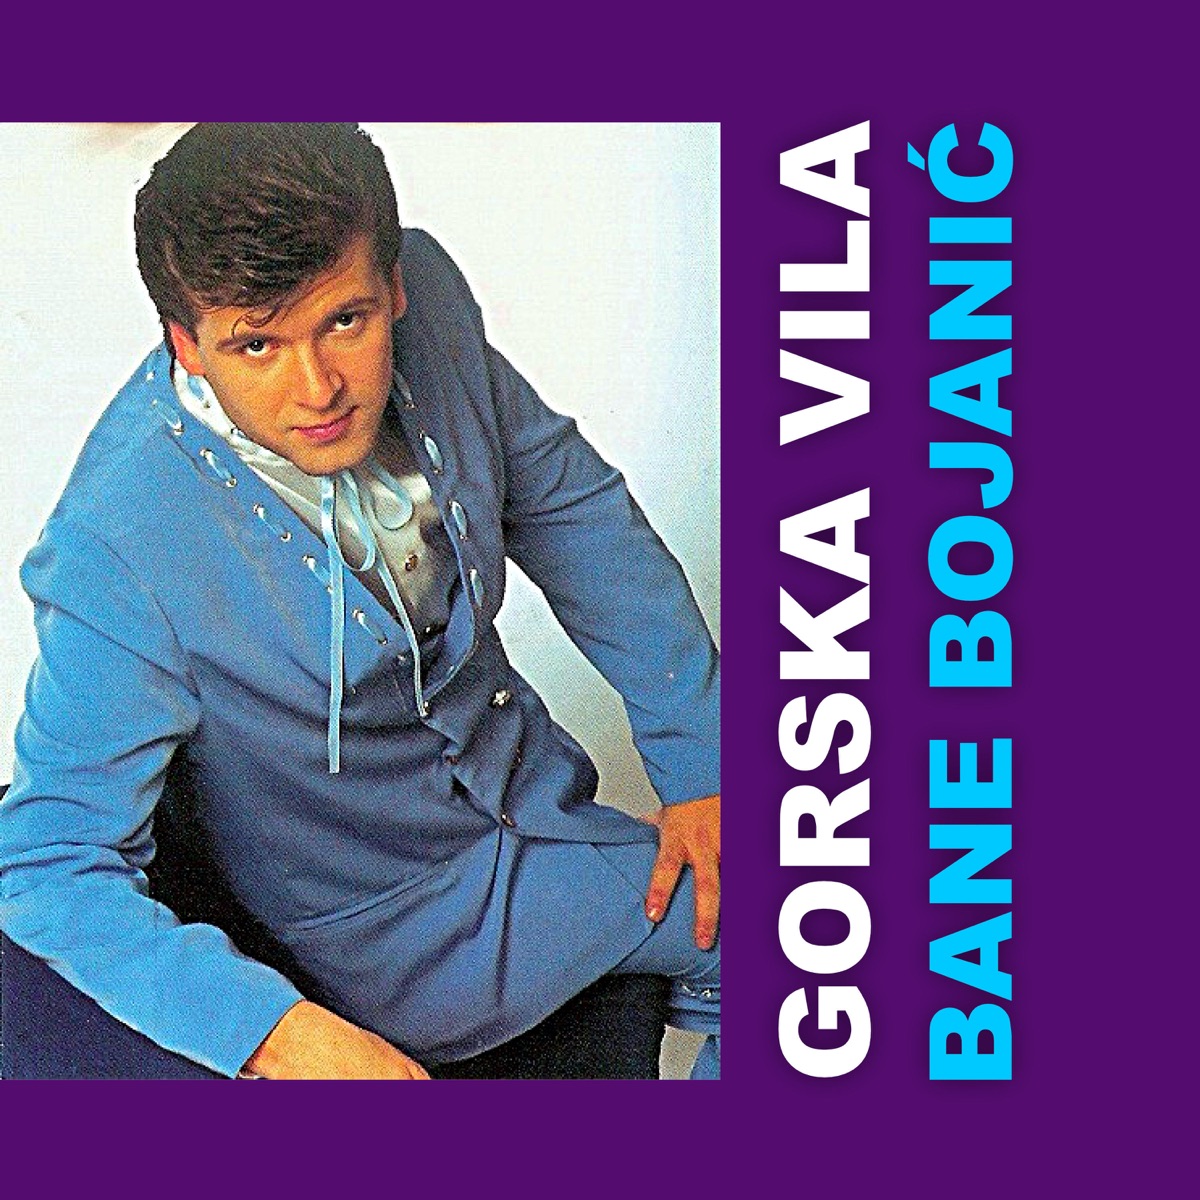 Gorska Vila - Album by Bane Bojanic - Apple Music